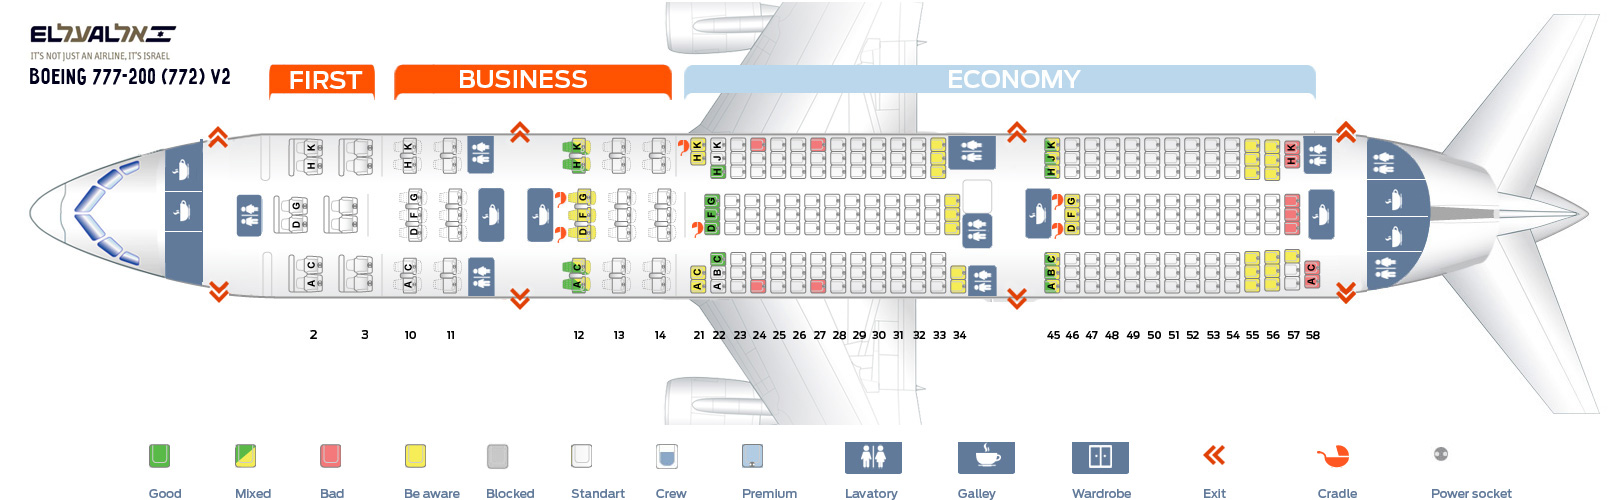 Seat Map Boeing 777-200 V2 EL AL